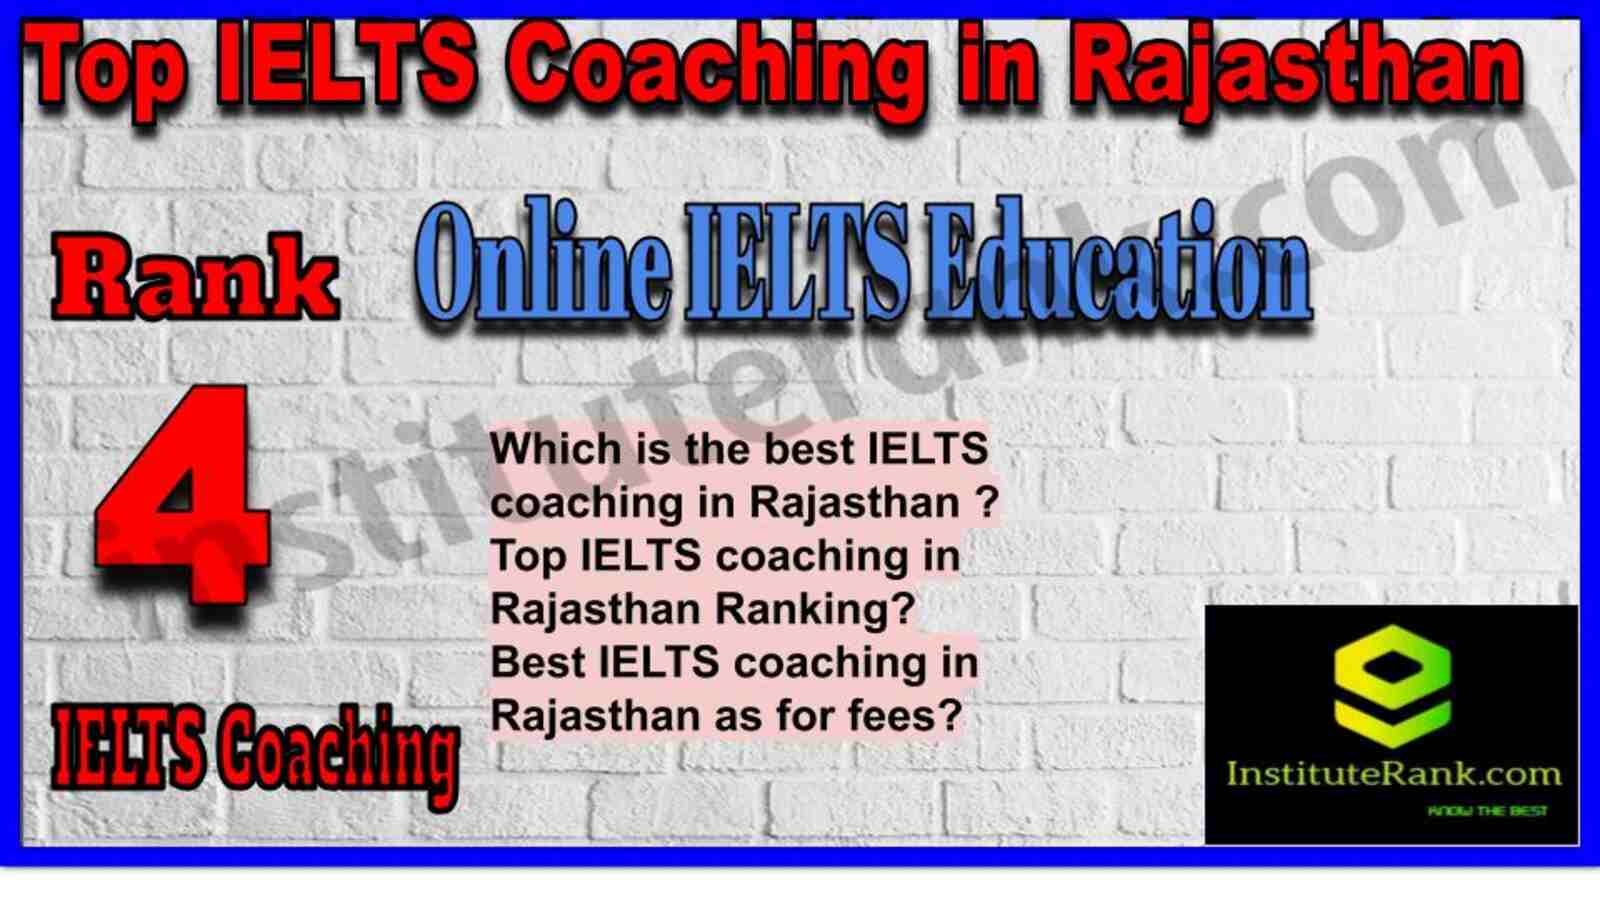 Rank 4. Online IELTS Education | Best ILETS Coaching in Rajasthan